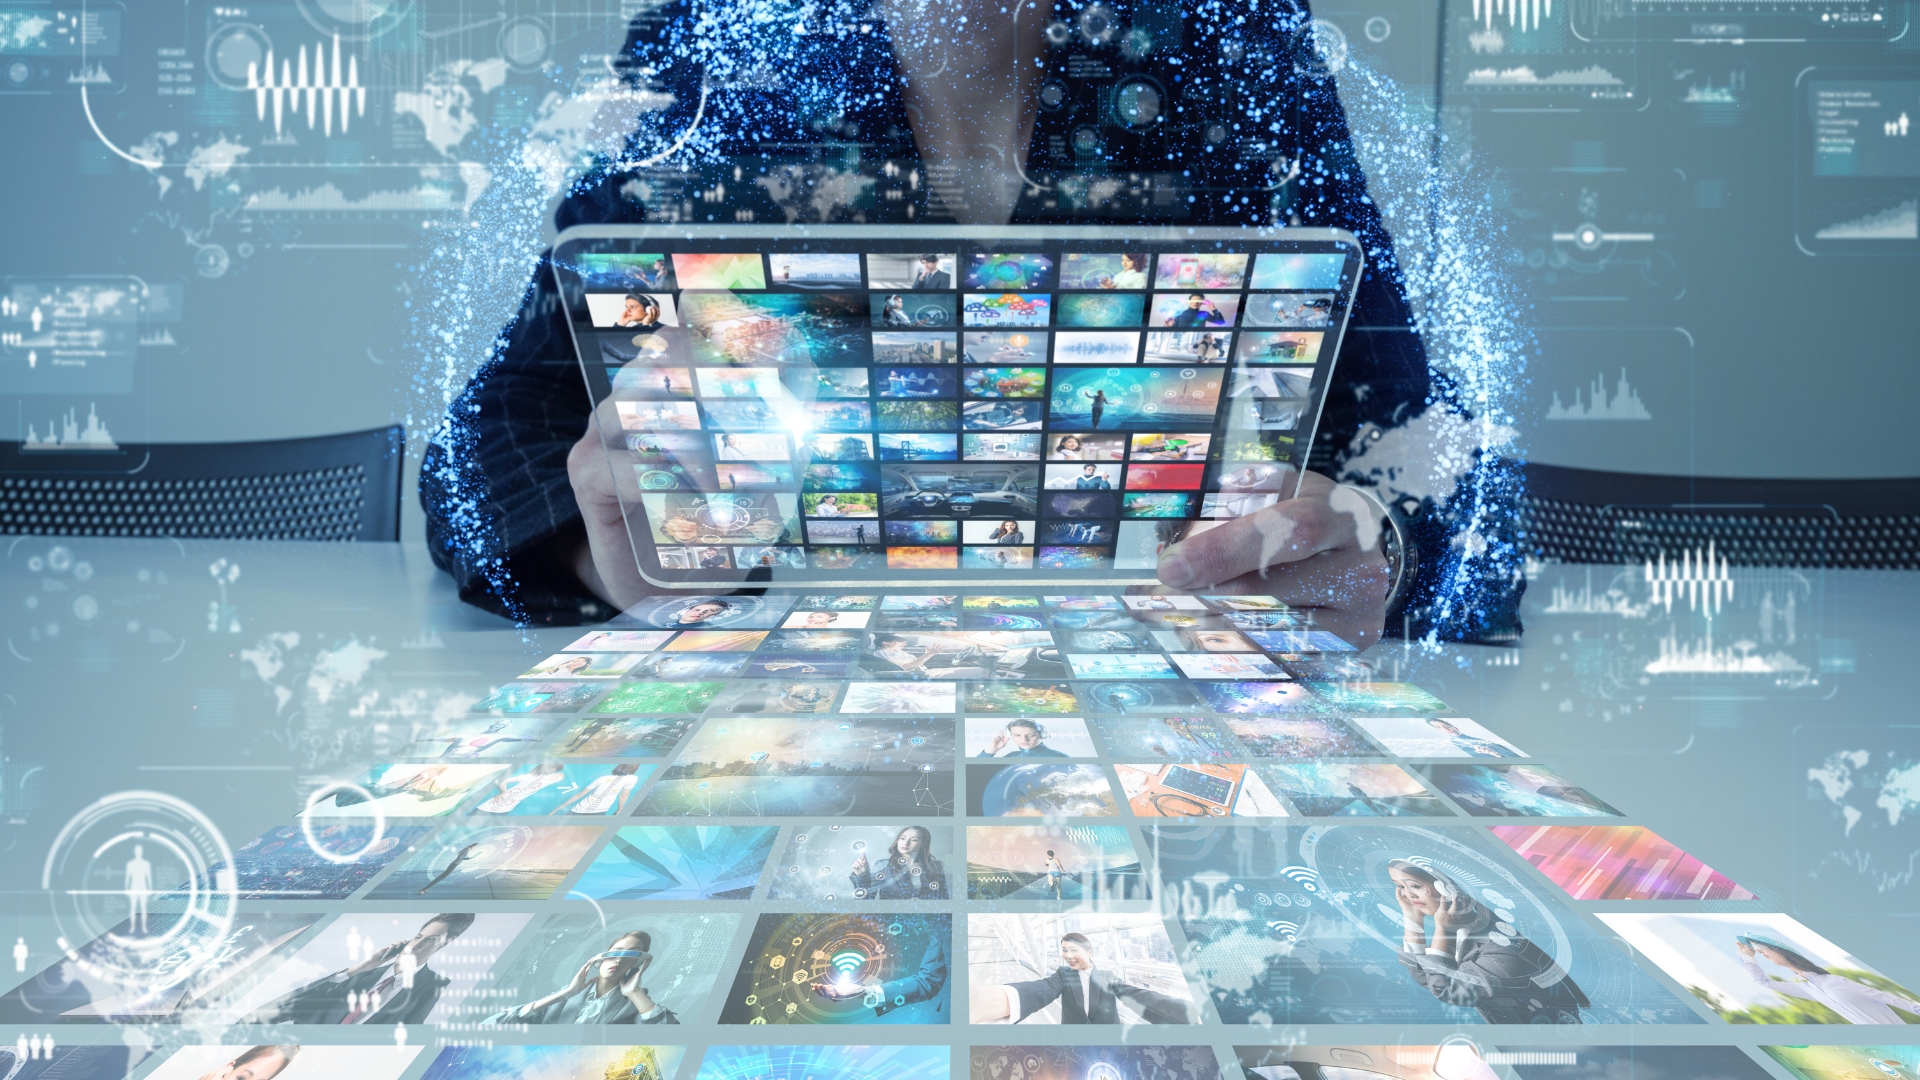 Personne qui tient une tablette avec différents écrans pour illustrer la stratégie média multi-canaux proposée par Mediagenic